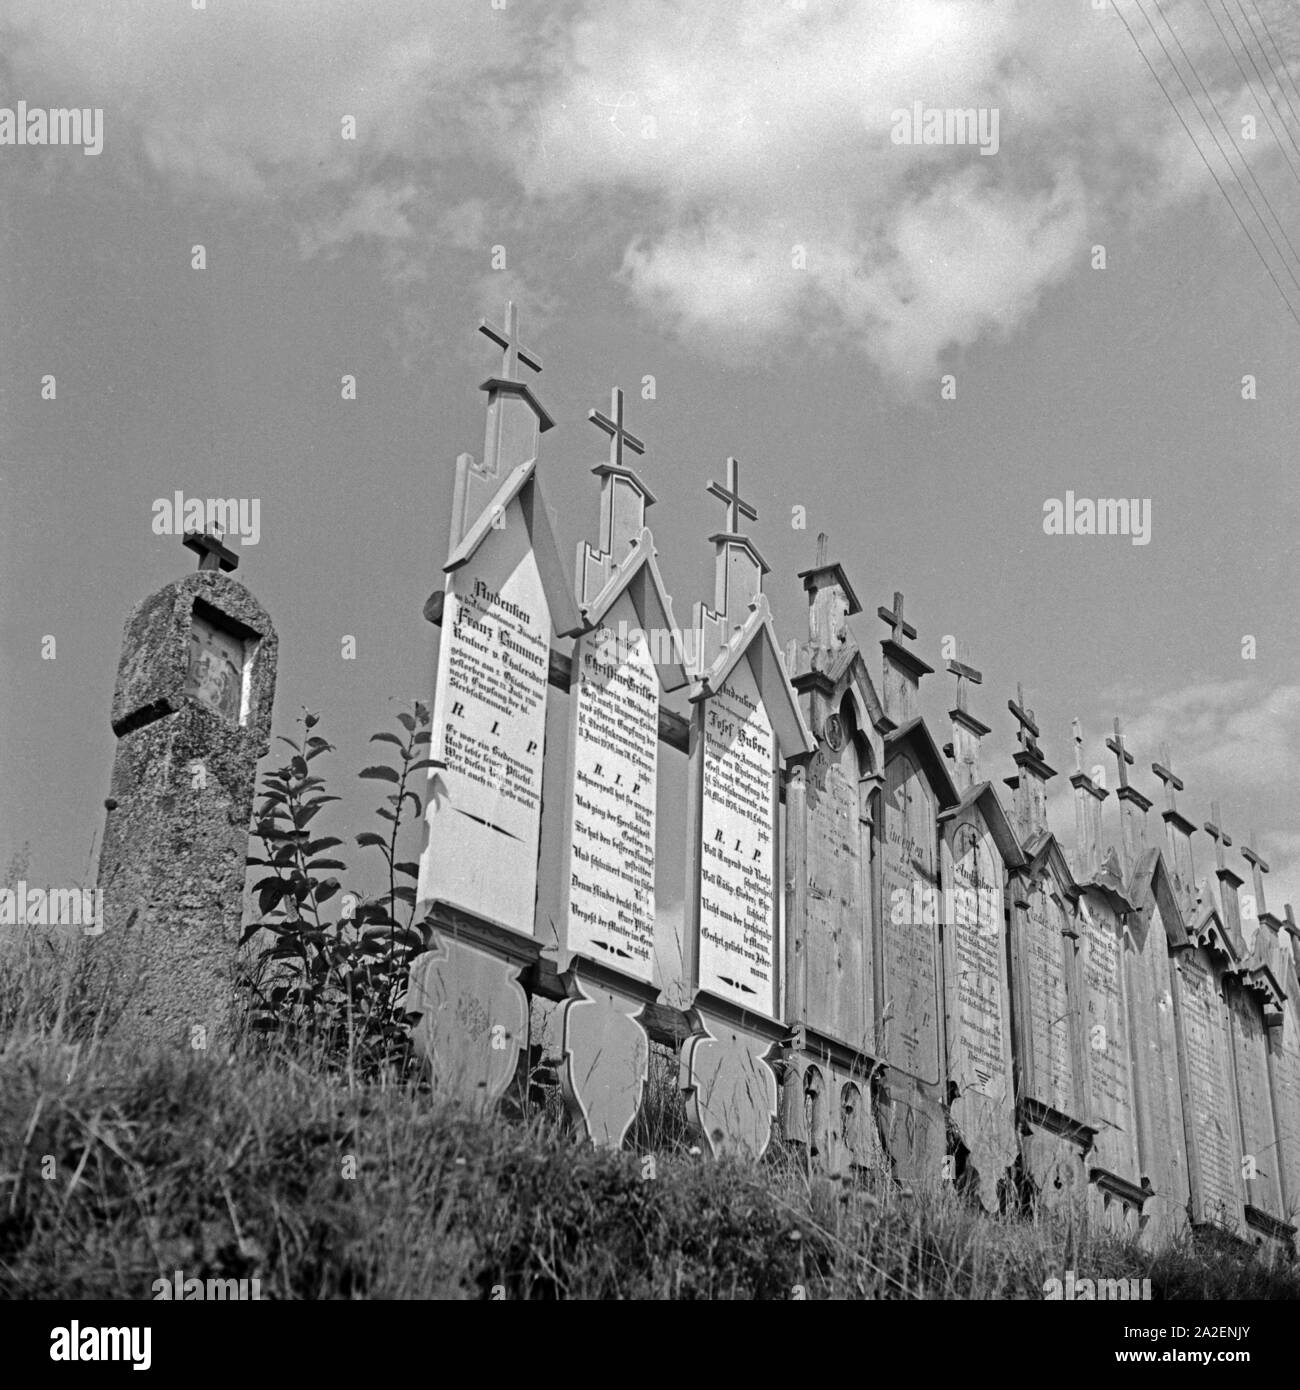 Totenbretter von Verstorbenen aus der Böhmerwald Regione, Deutschland 1930er Jahre. Memorial assi per il defunto in corrispondenza della regione della foresta Boema, Germania 1930s. Foto Stock